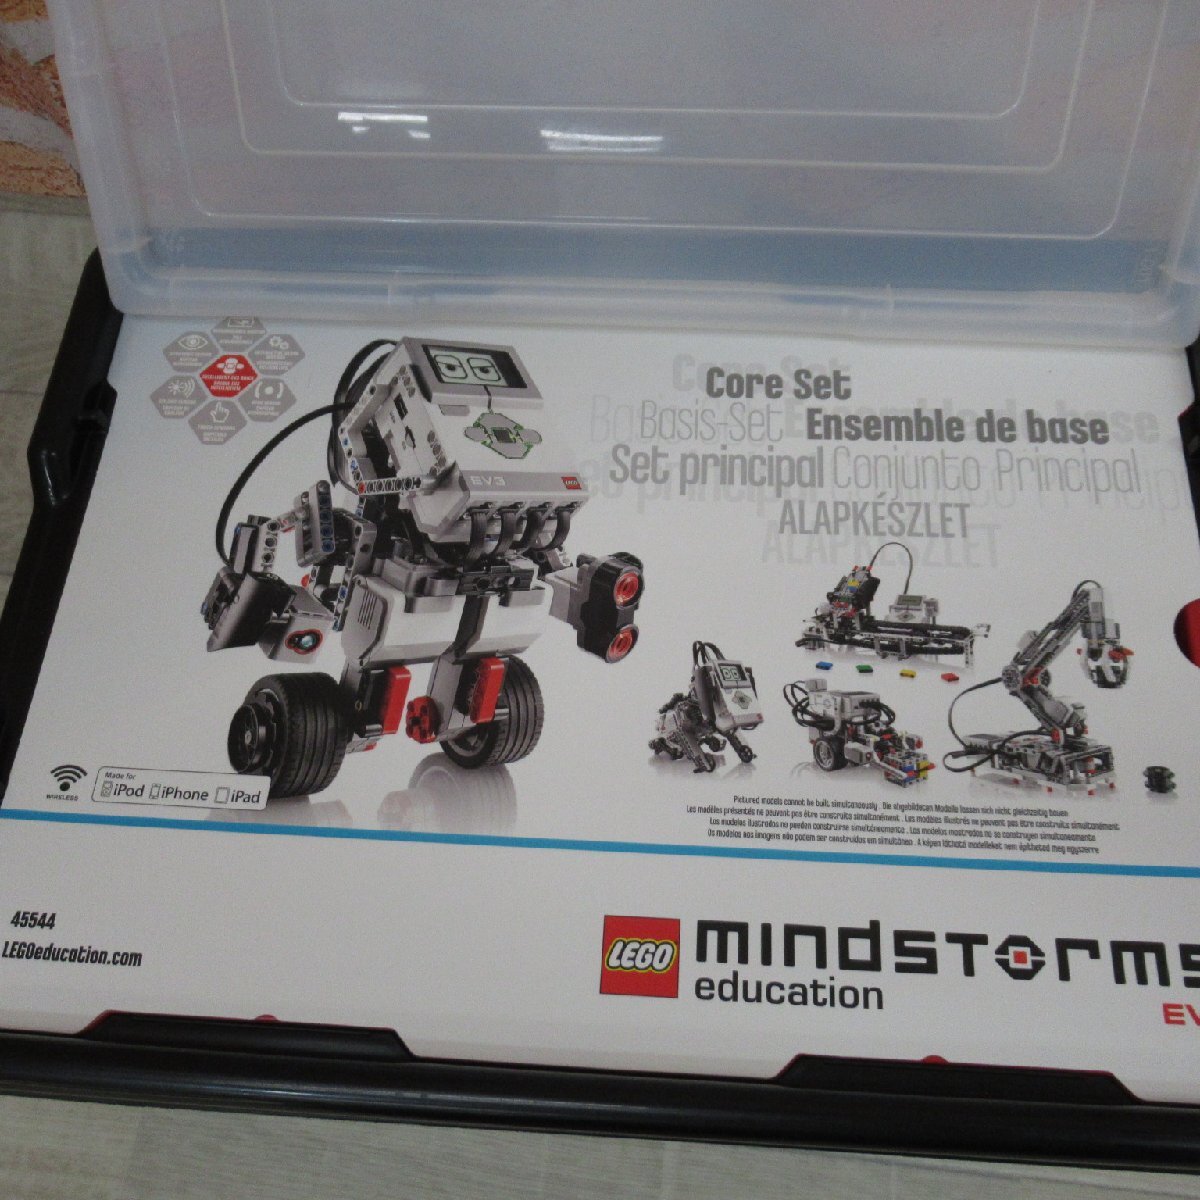 TJ909/教育版 LEGO レゴ Education MindStorm EV3 基本セット マインドストーム 45544 ACアダプター付属_画像3